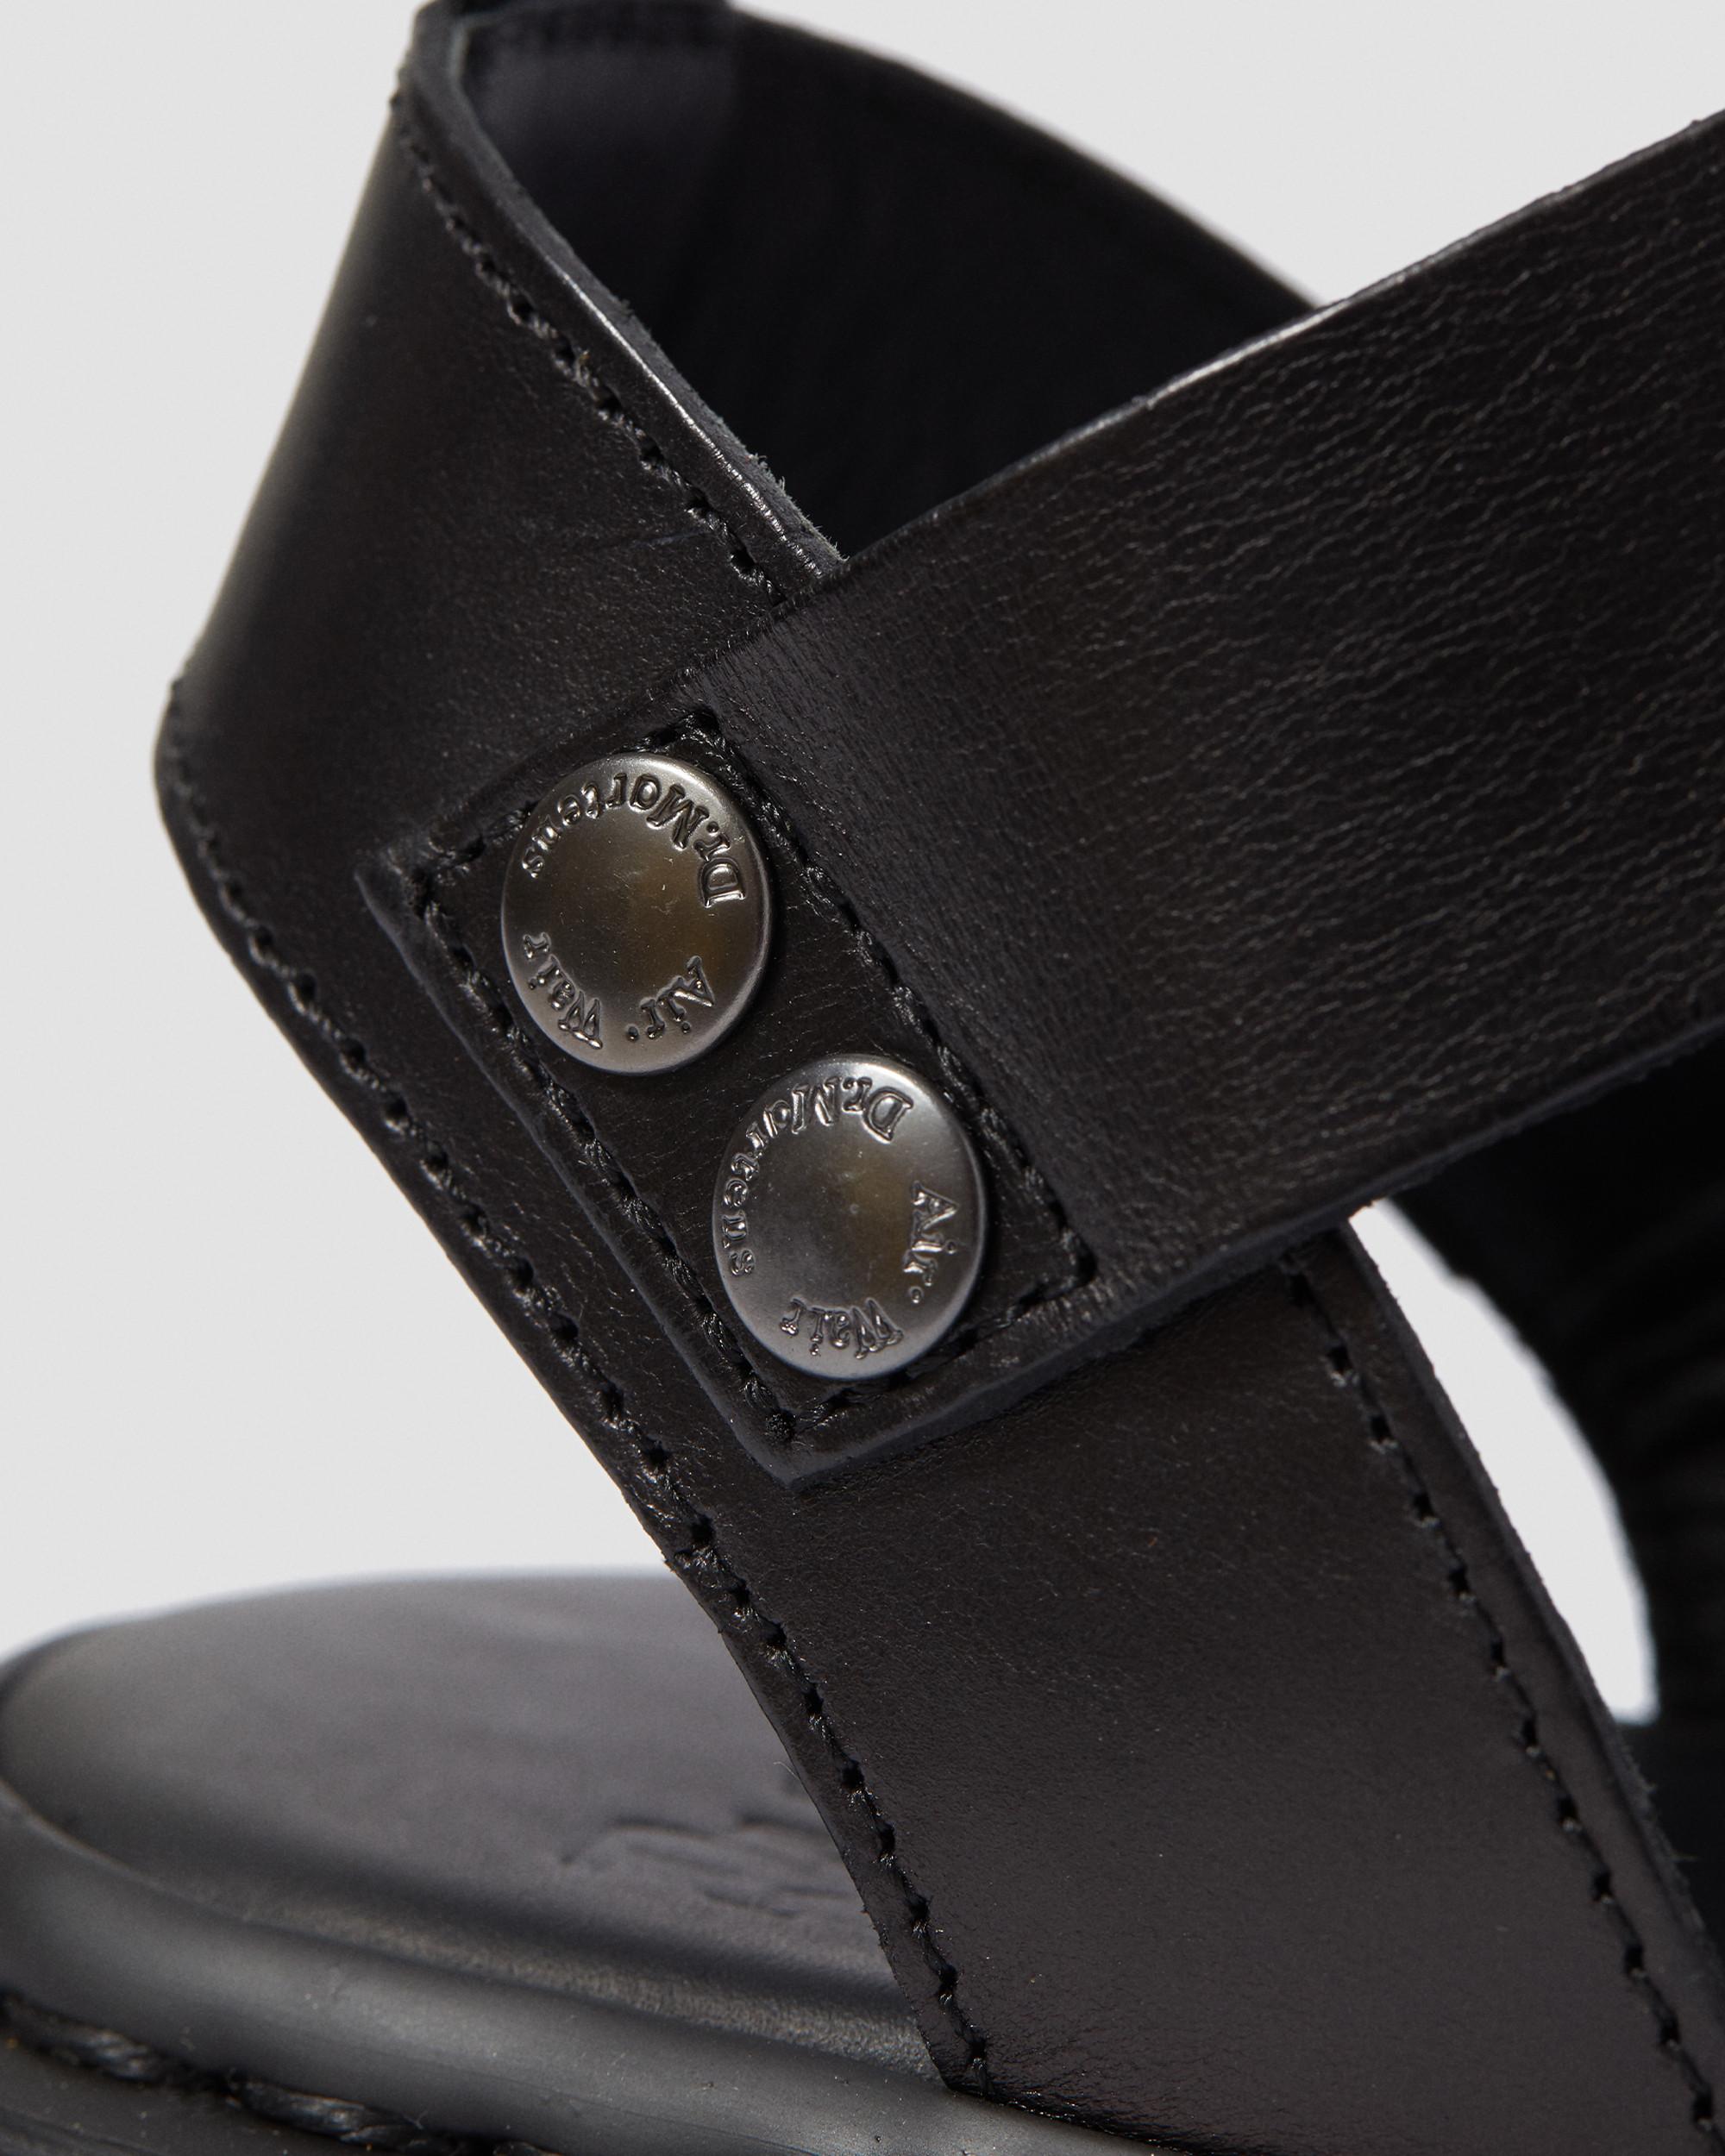 Gryphon Brando Leather Gladiator Sandals in Black | Dr. Martens